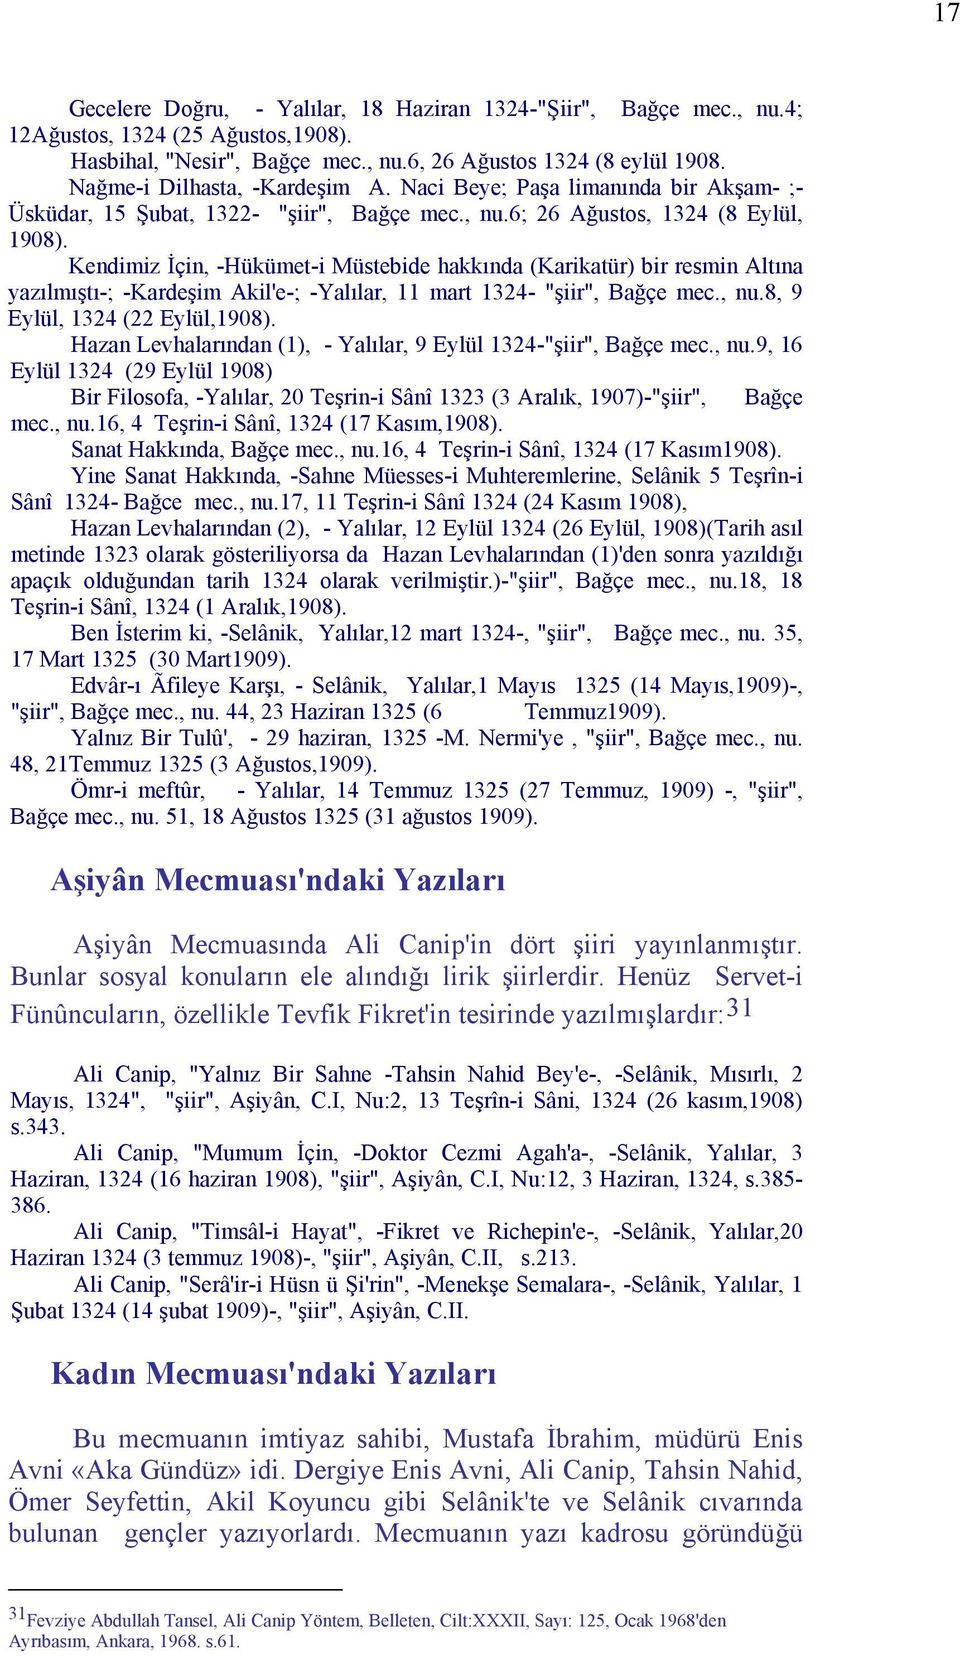 Kendimiz İçin, -Hükümet-i Müstebide hakkında (Karikatür) bir resmin Altına yazılmıştı-; -Kardeşim Akil'e-; -Yalılar, 11 mart 1324- "şiir", Bağçe mec., nu.8, 9 Eylül, 1324 (22 Eylül,1908).